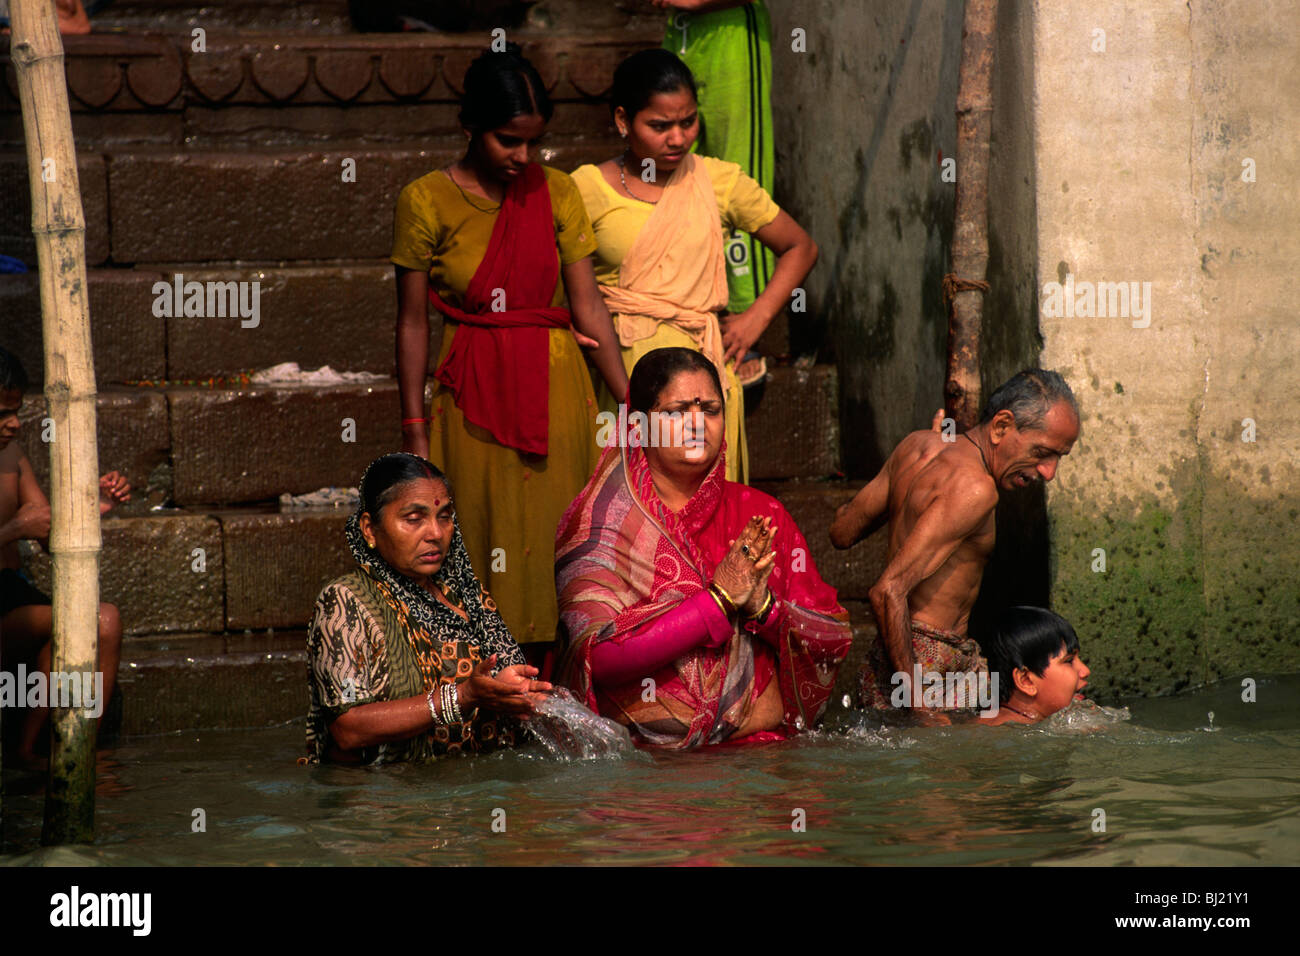 India, Varanasi, Ganges river, women praying at dawn Stock Photo